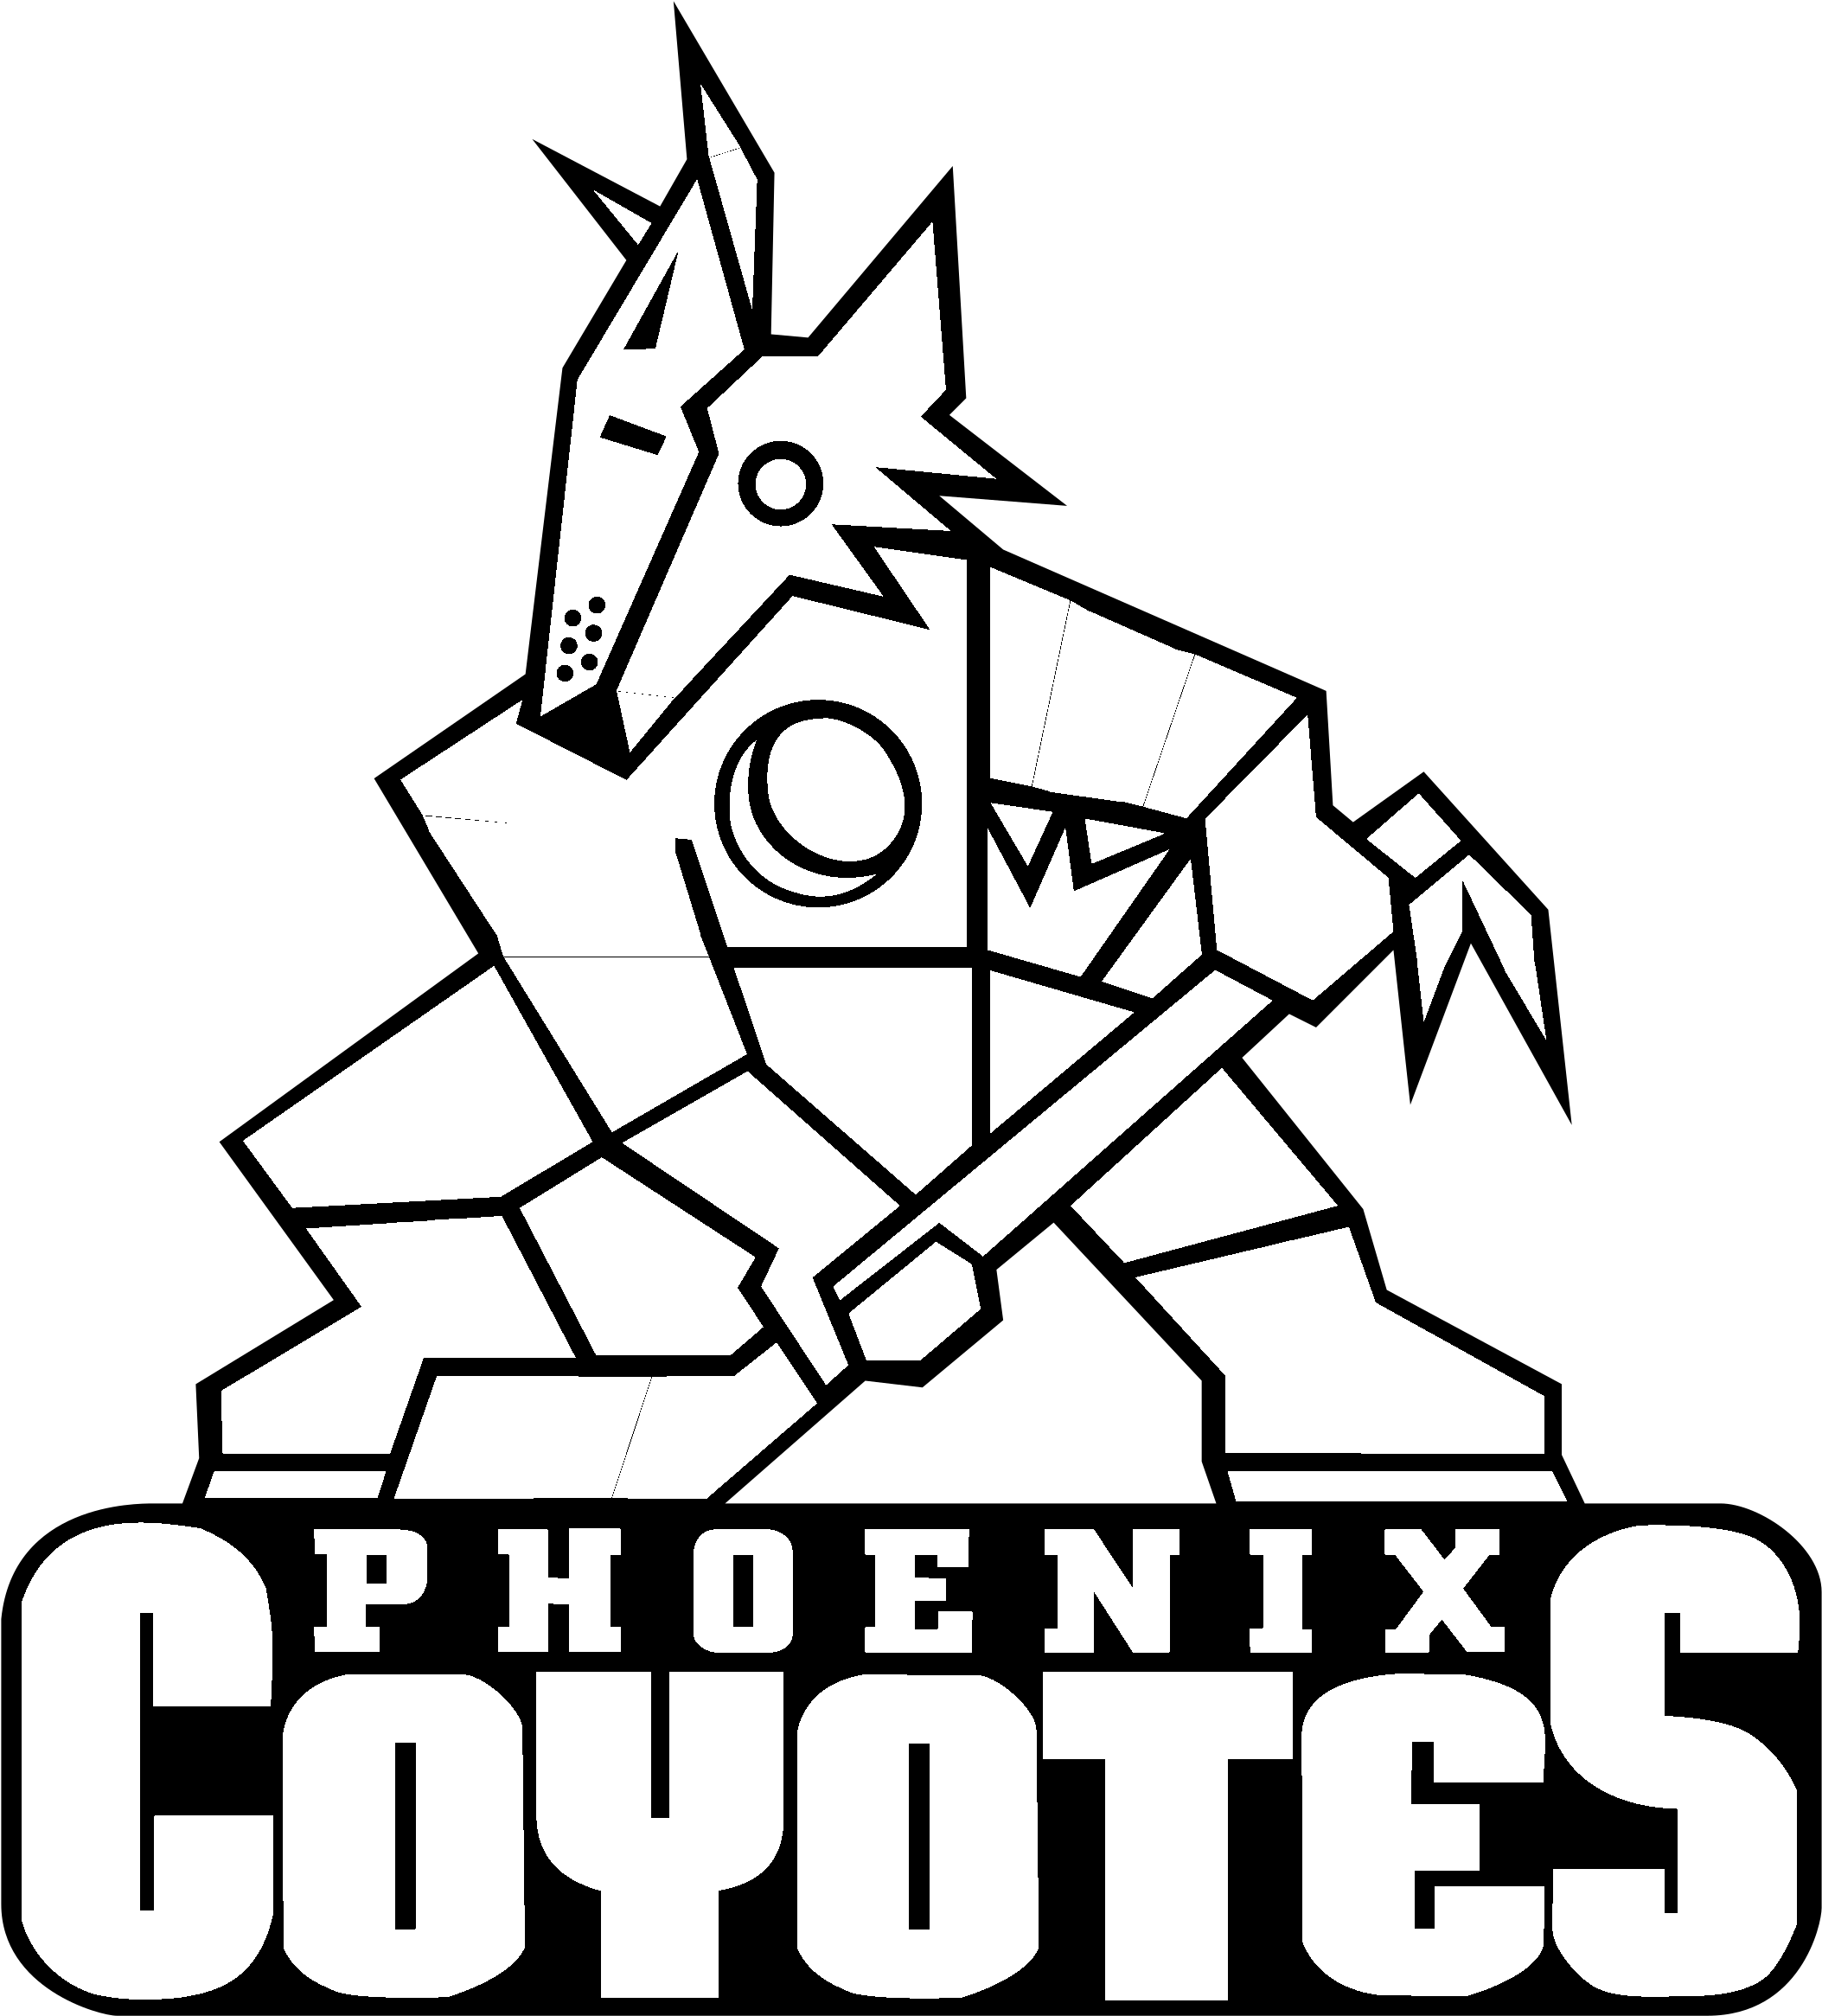 Phoenix Coyotes Logo Black And White - Phoenix Coyotes Black And White (2400x2400), Png Download